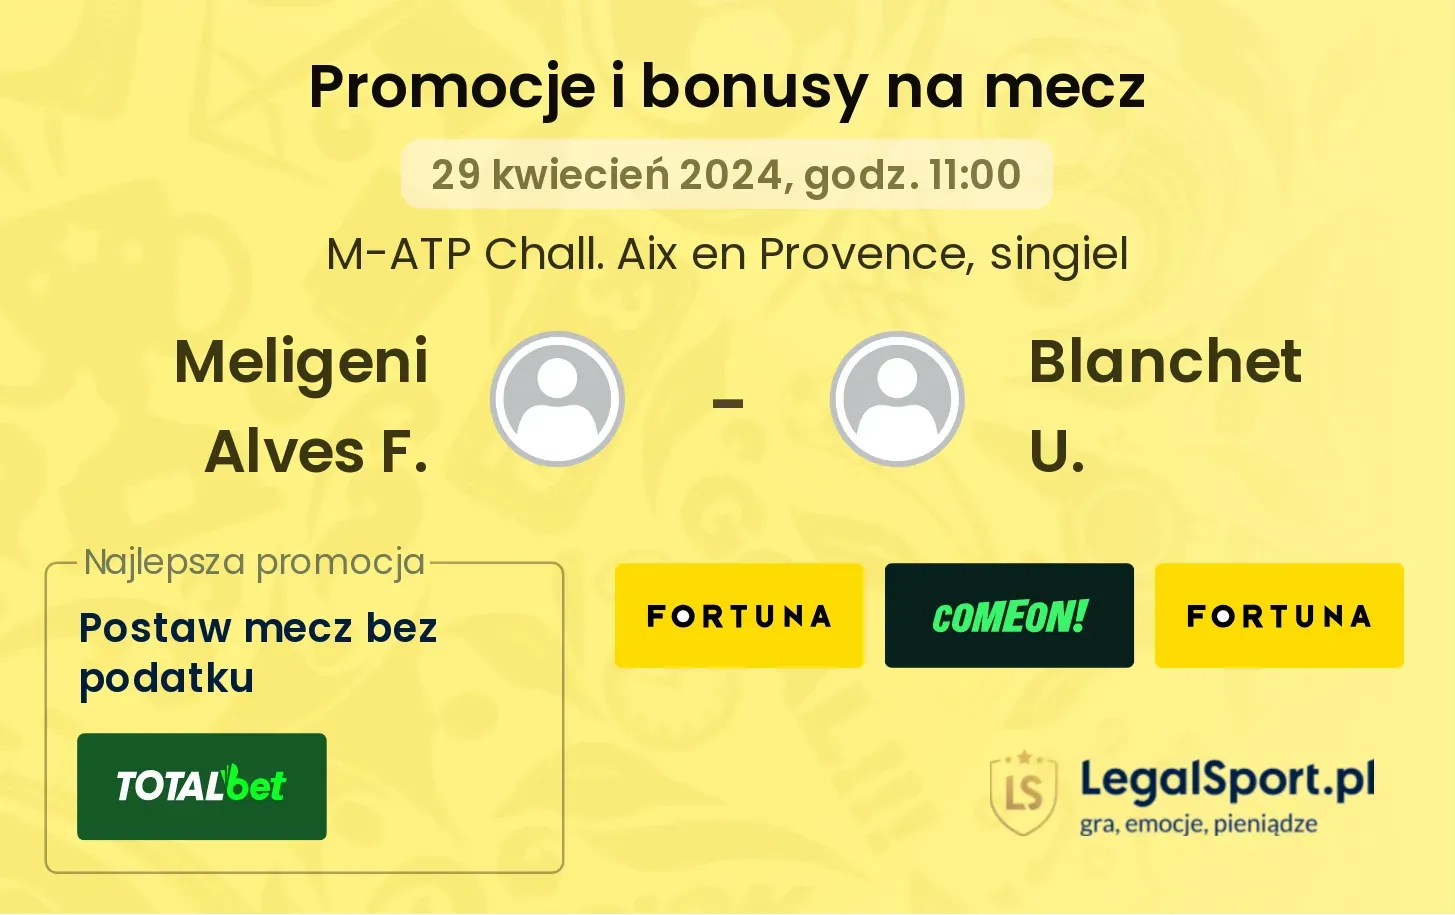 Meligeni Alves F. - Blanchet U. promocje bonusy na mecz